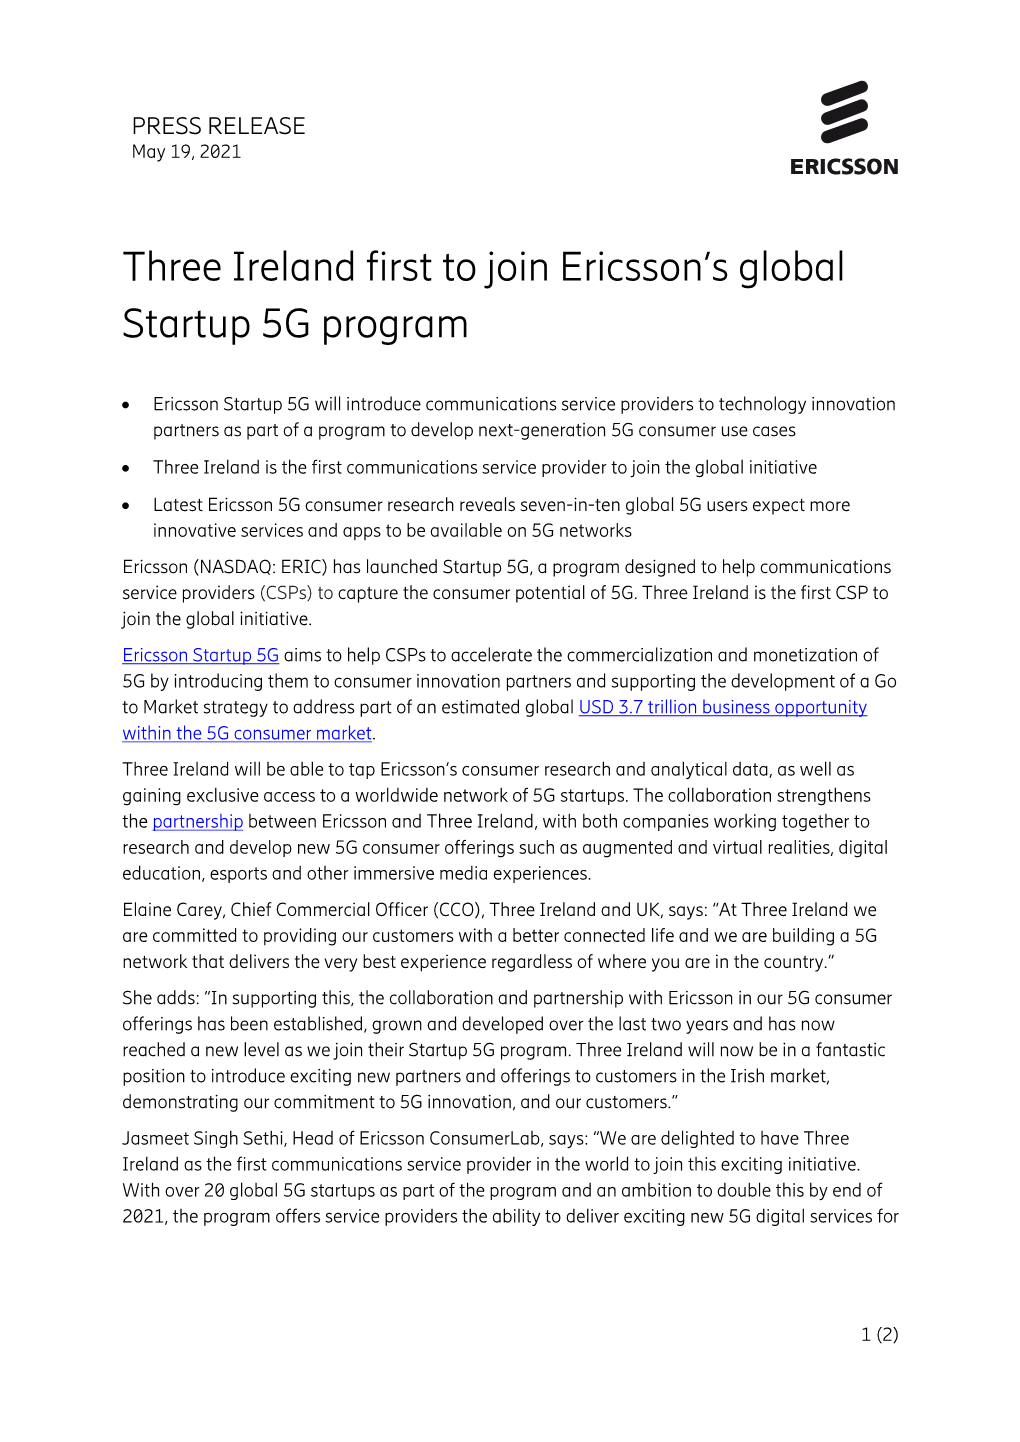 Press Release Ericsson